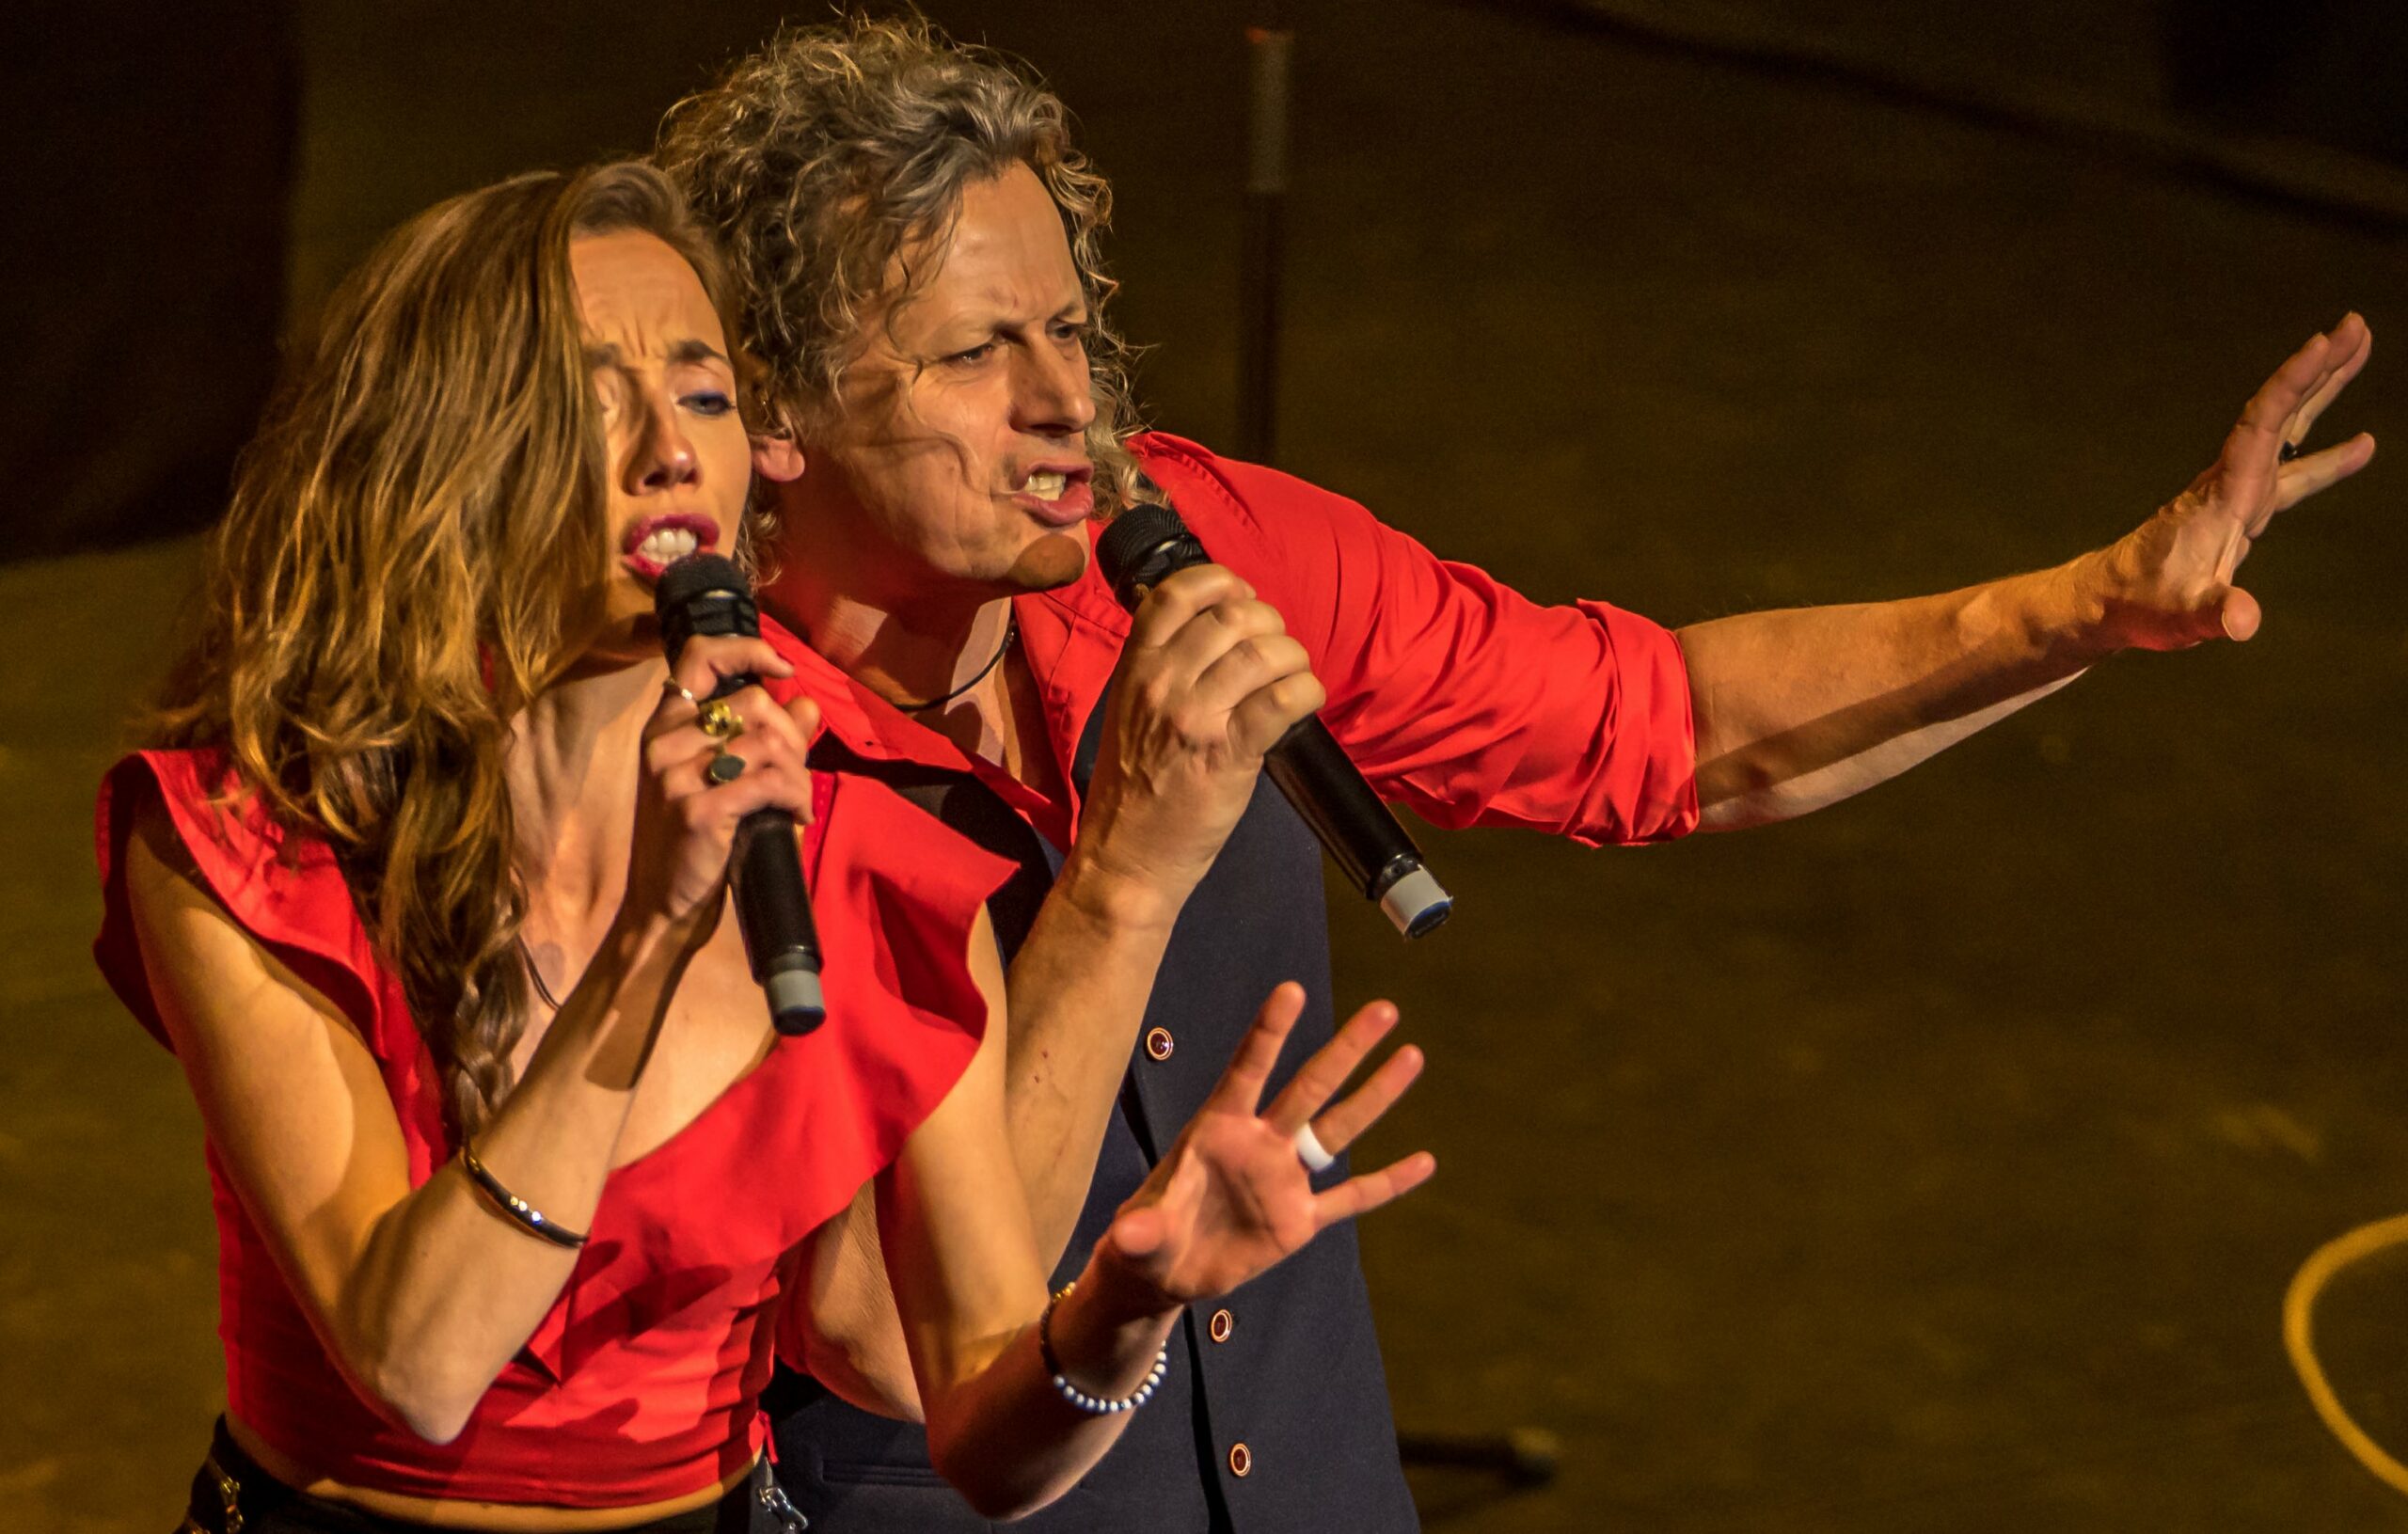 Zanger en zangeres gekleed in het rood zingen in een microfoon